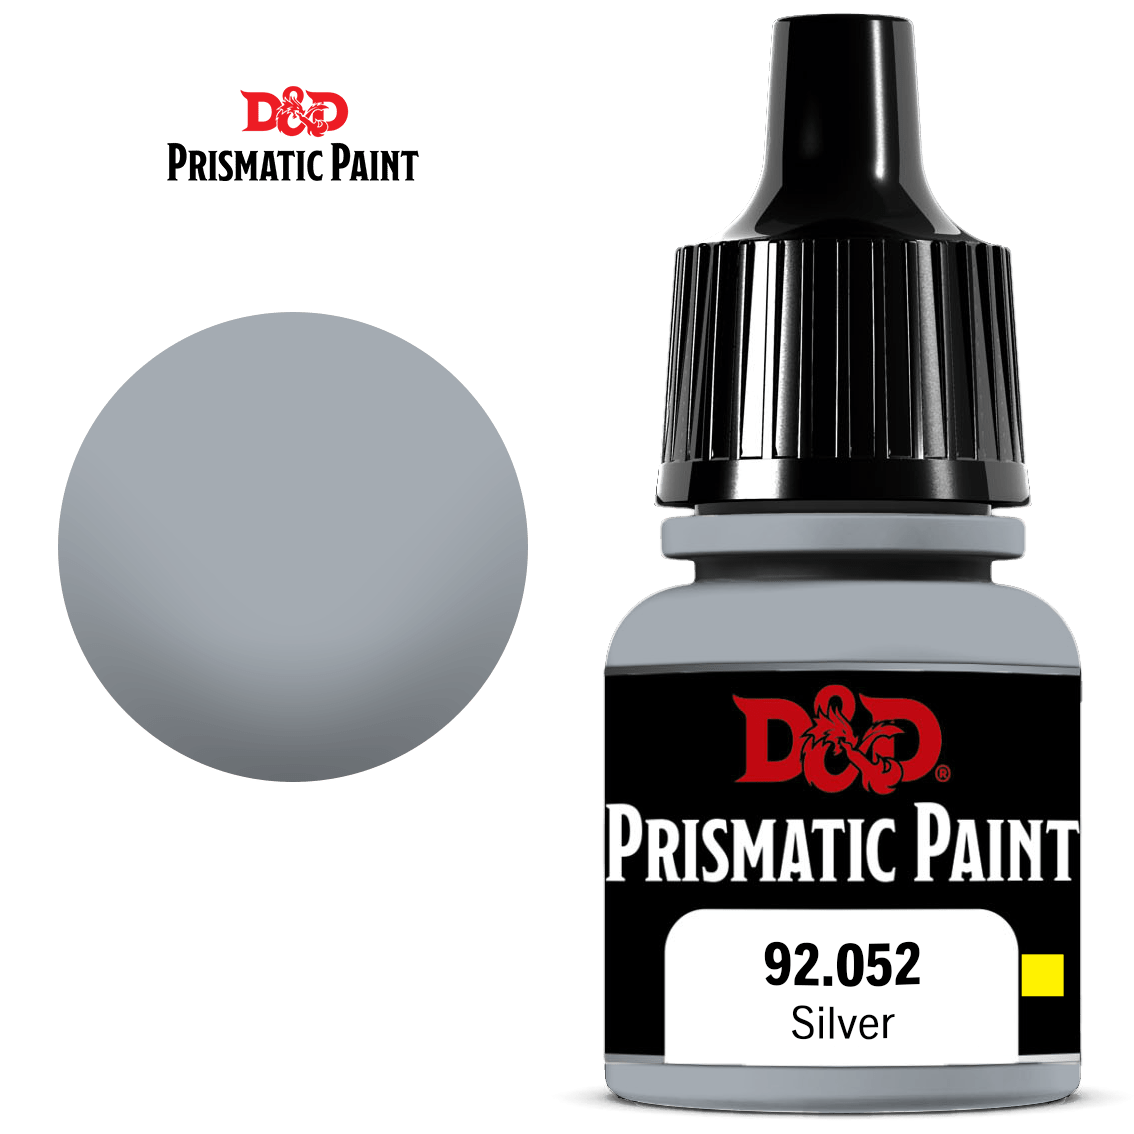 D&D Prismatic Paint: Silver